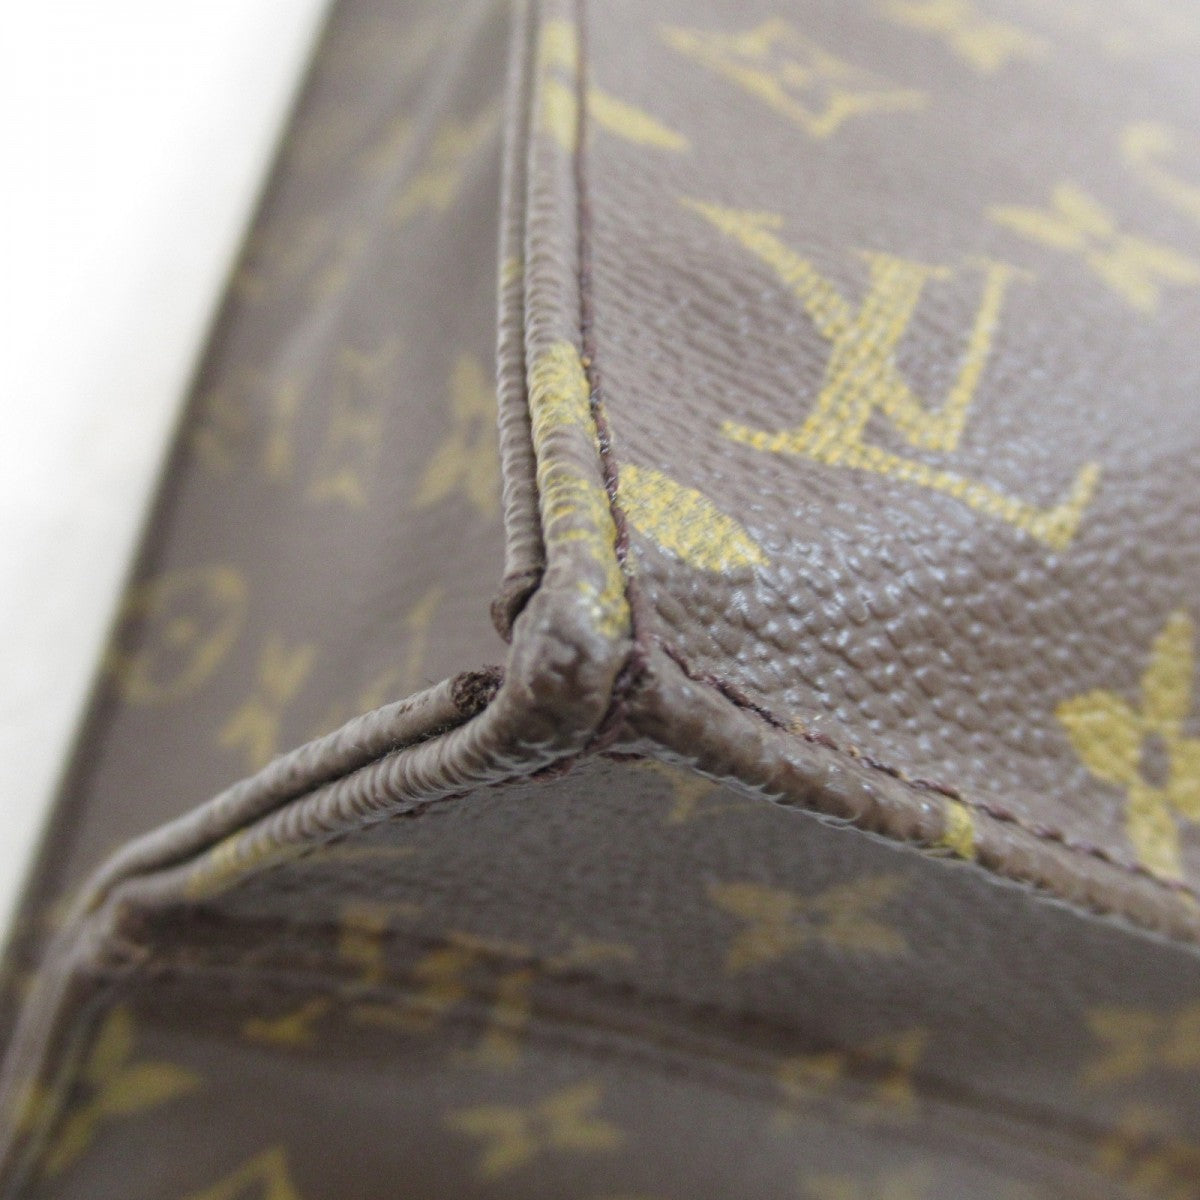 Louis Vuitton Sac Plat Handbag Tote Bag Monogram M51140